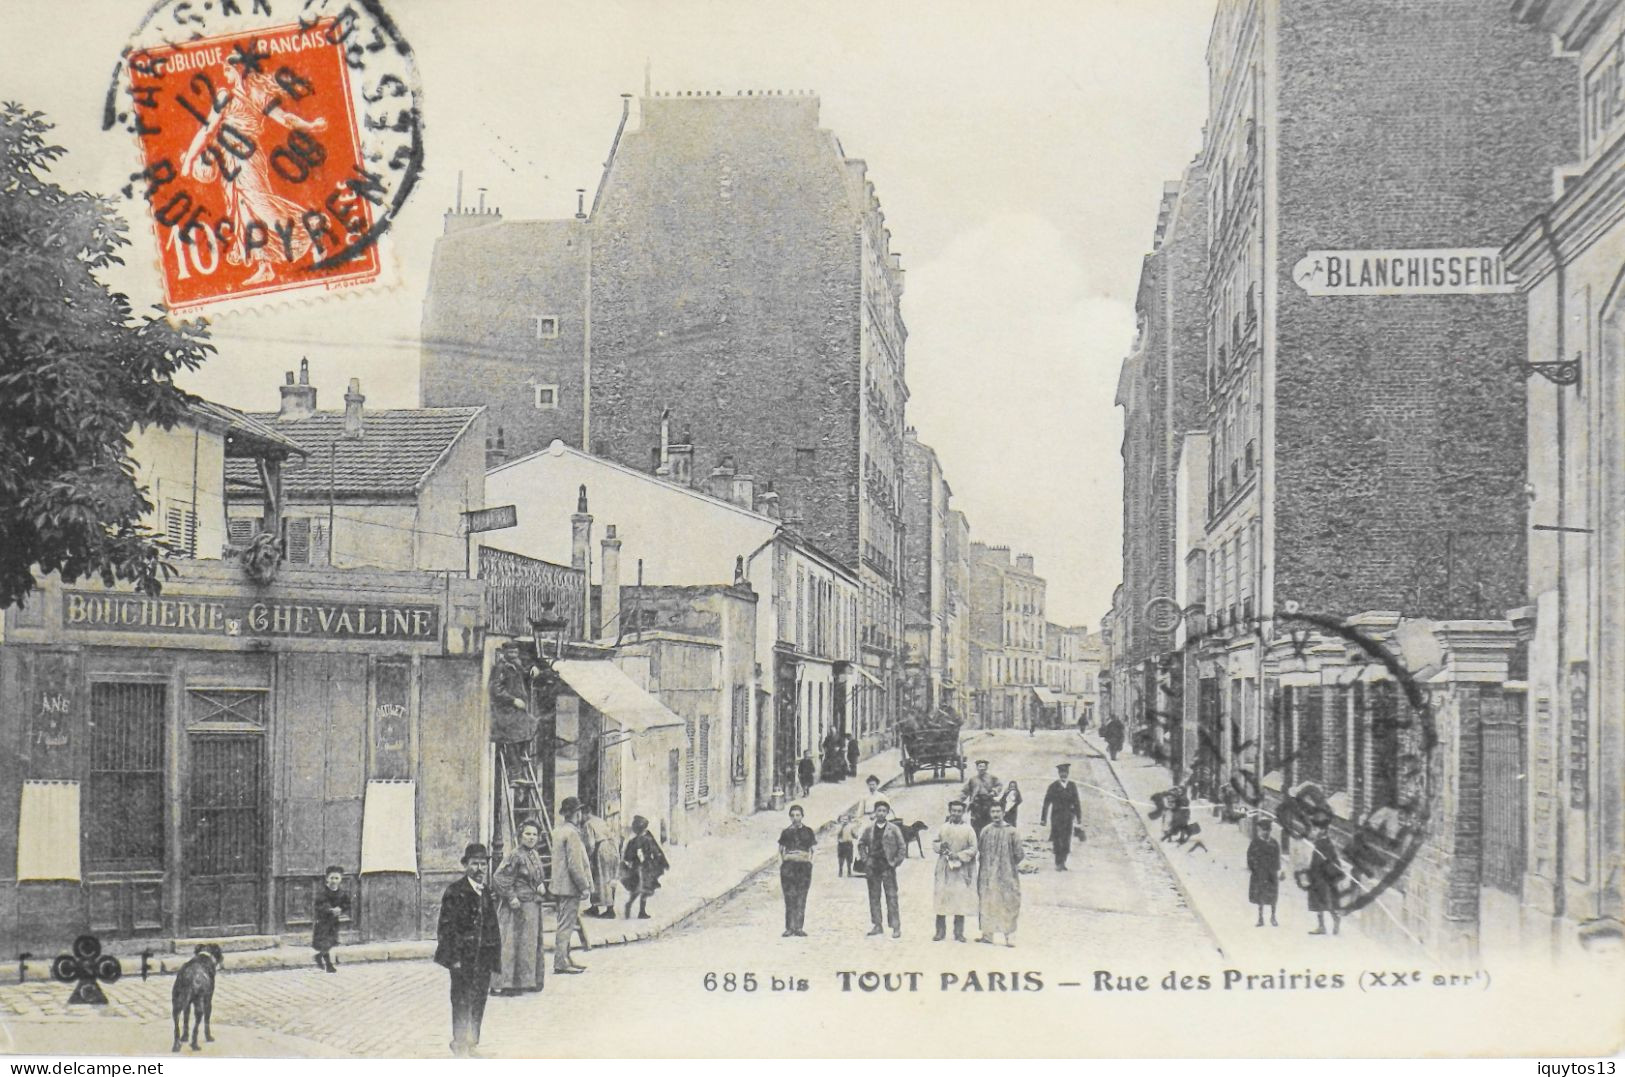 CPA. [75] > TOUT PARIS > N° 685 Bis - RUE DES PRAIRIES - ALLUMEUR DE REVERBERE - (XXe Arrt.) - 1909 - TBE - Distretto: 20